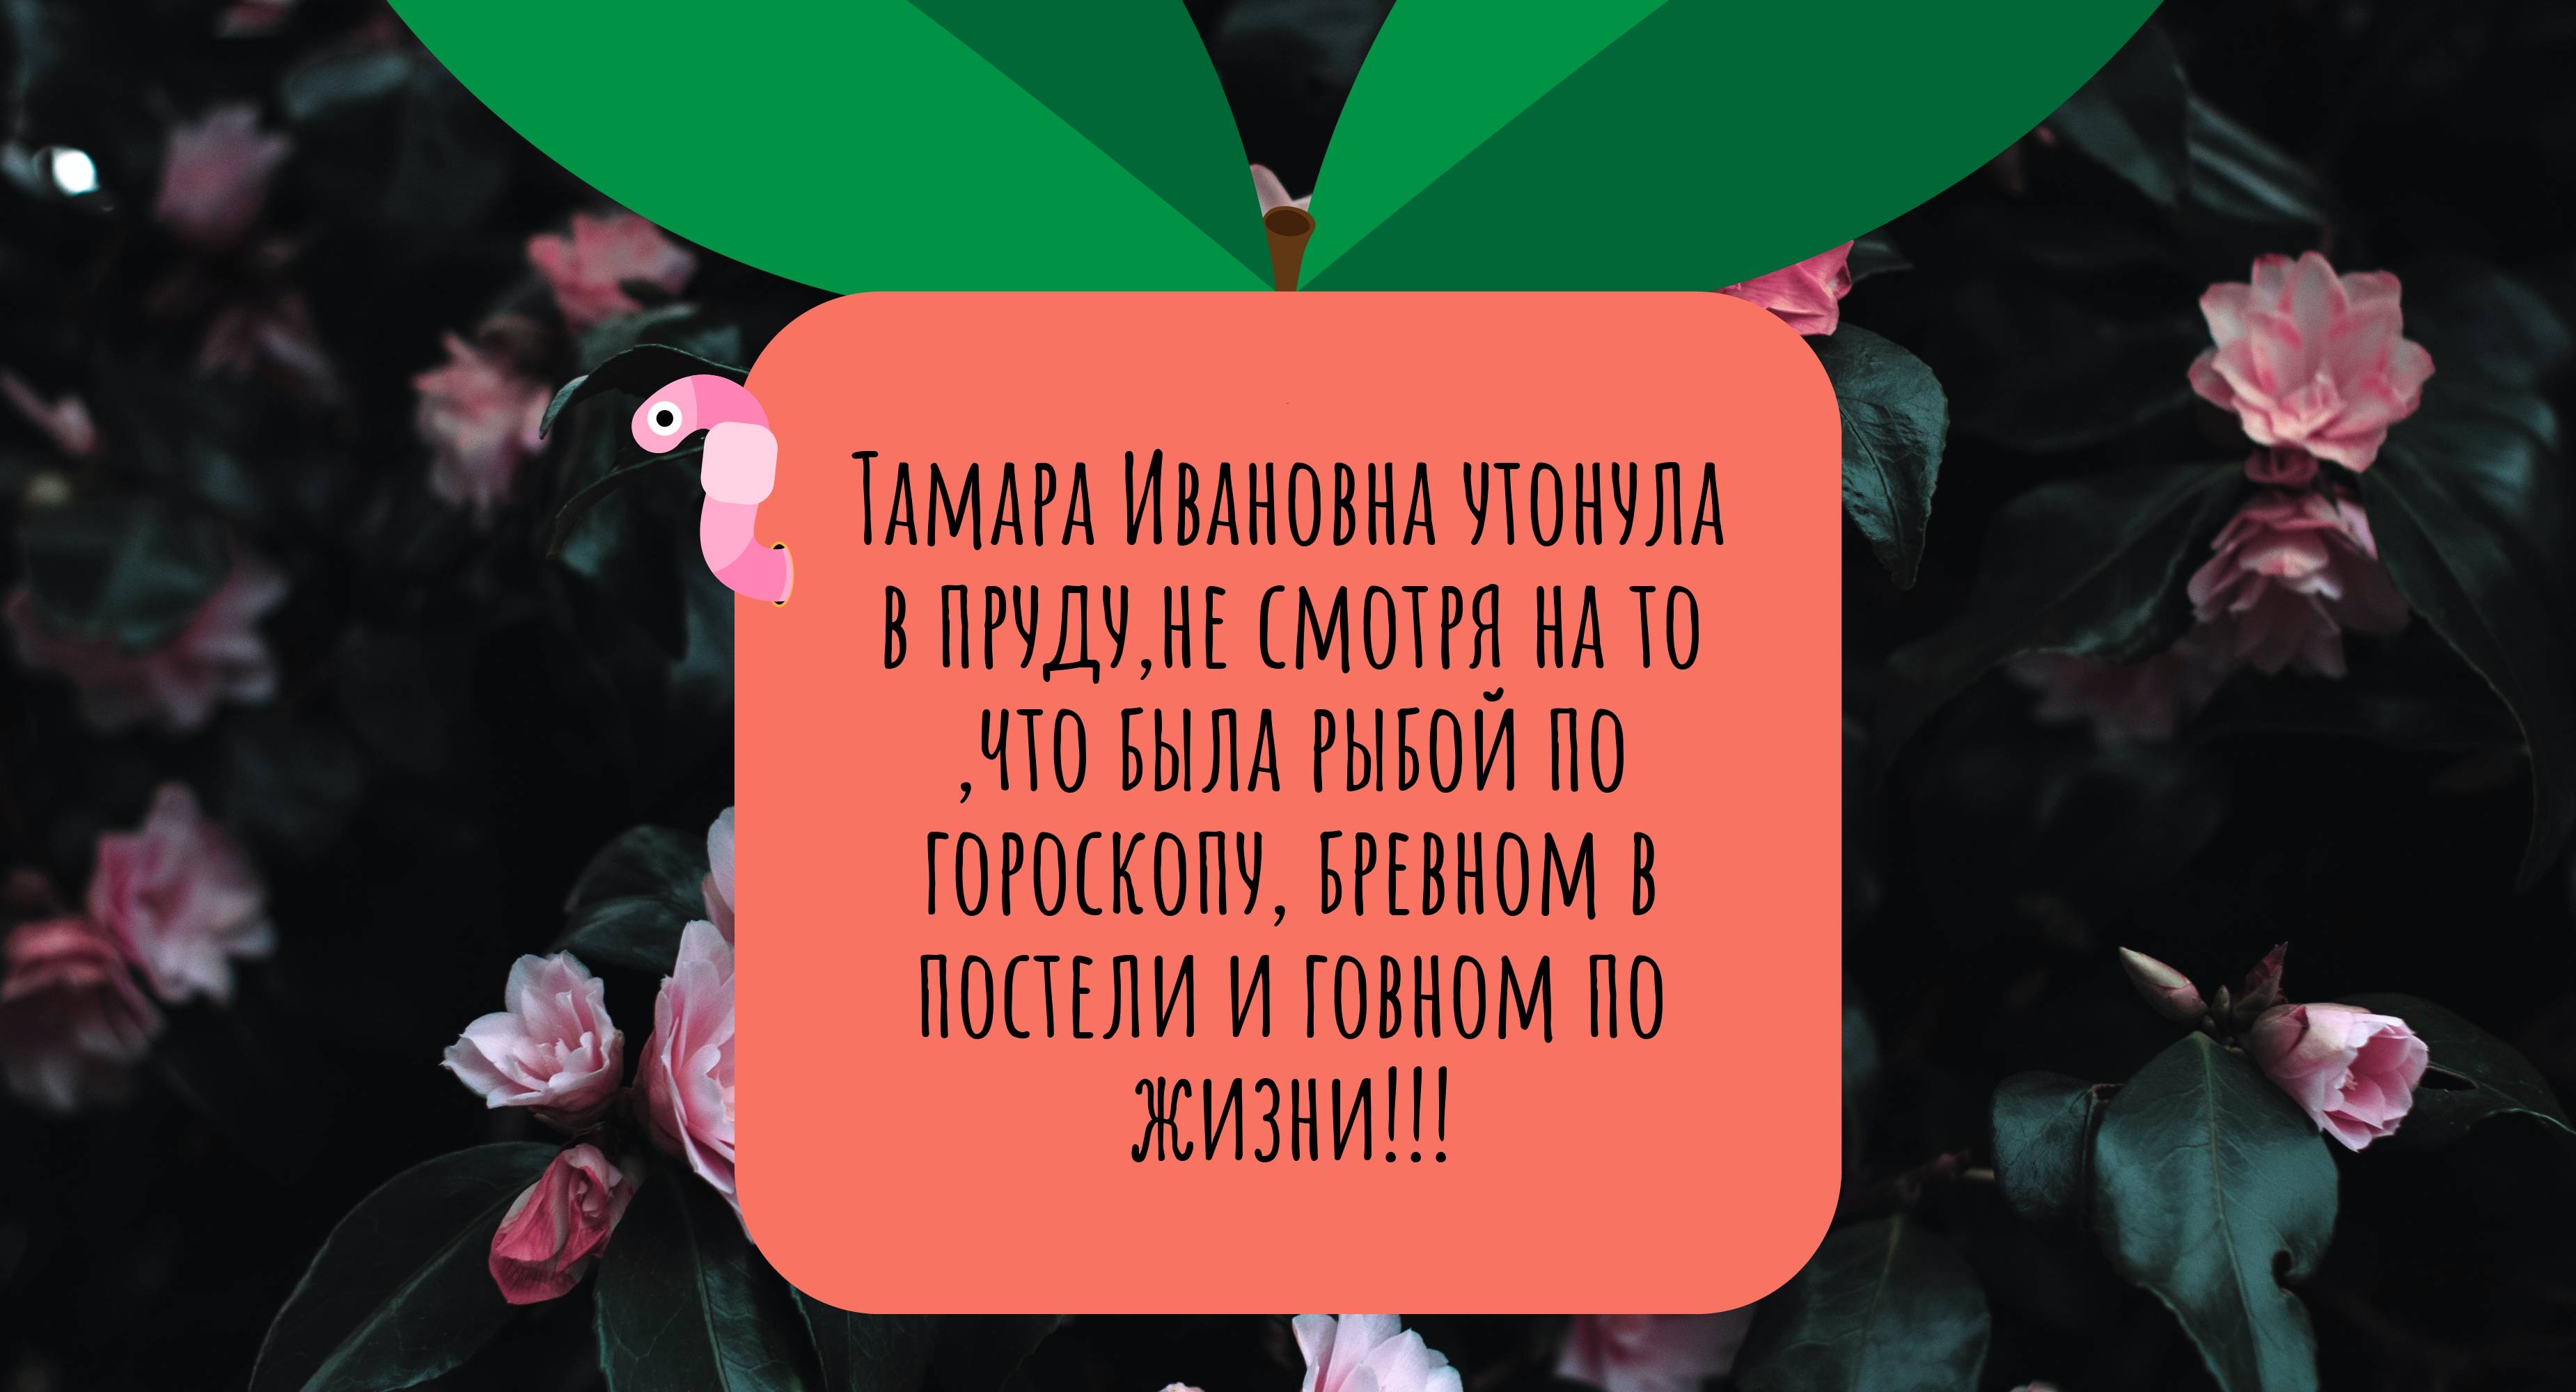 Тамара Ивановна утонула в пруду,не смотря на то ,что была рыбой по гороскопу, бревном в постели и говном по жизни!!!